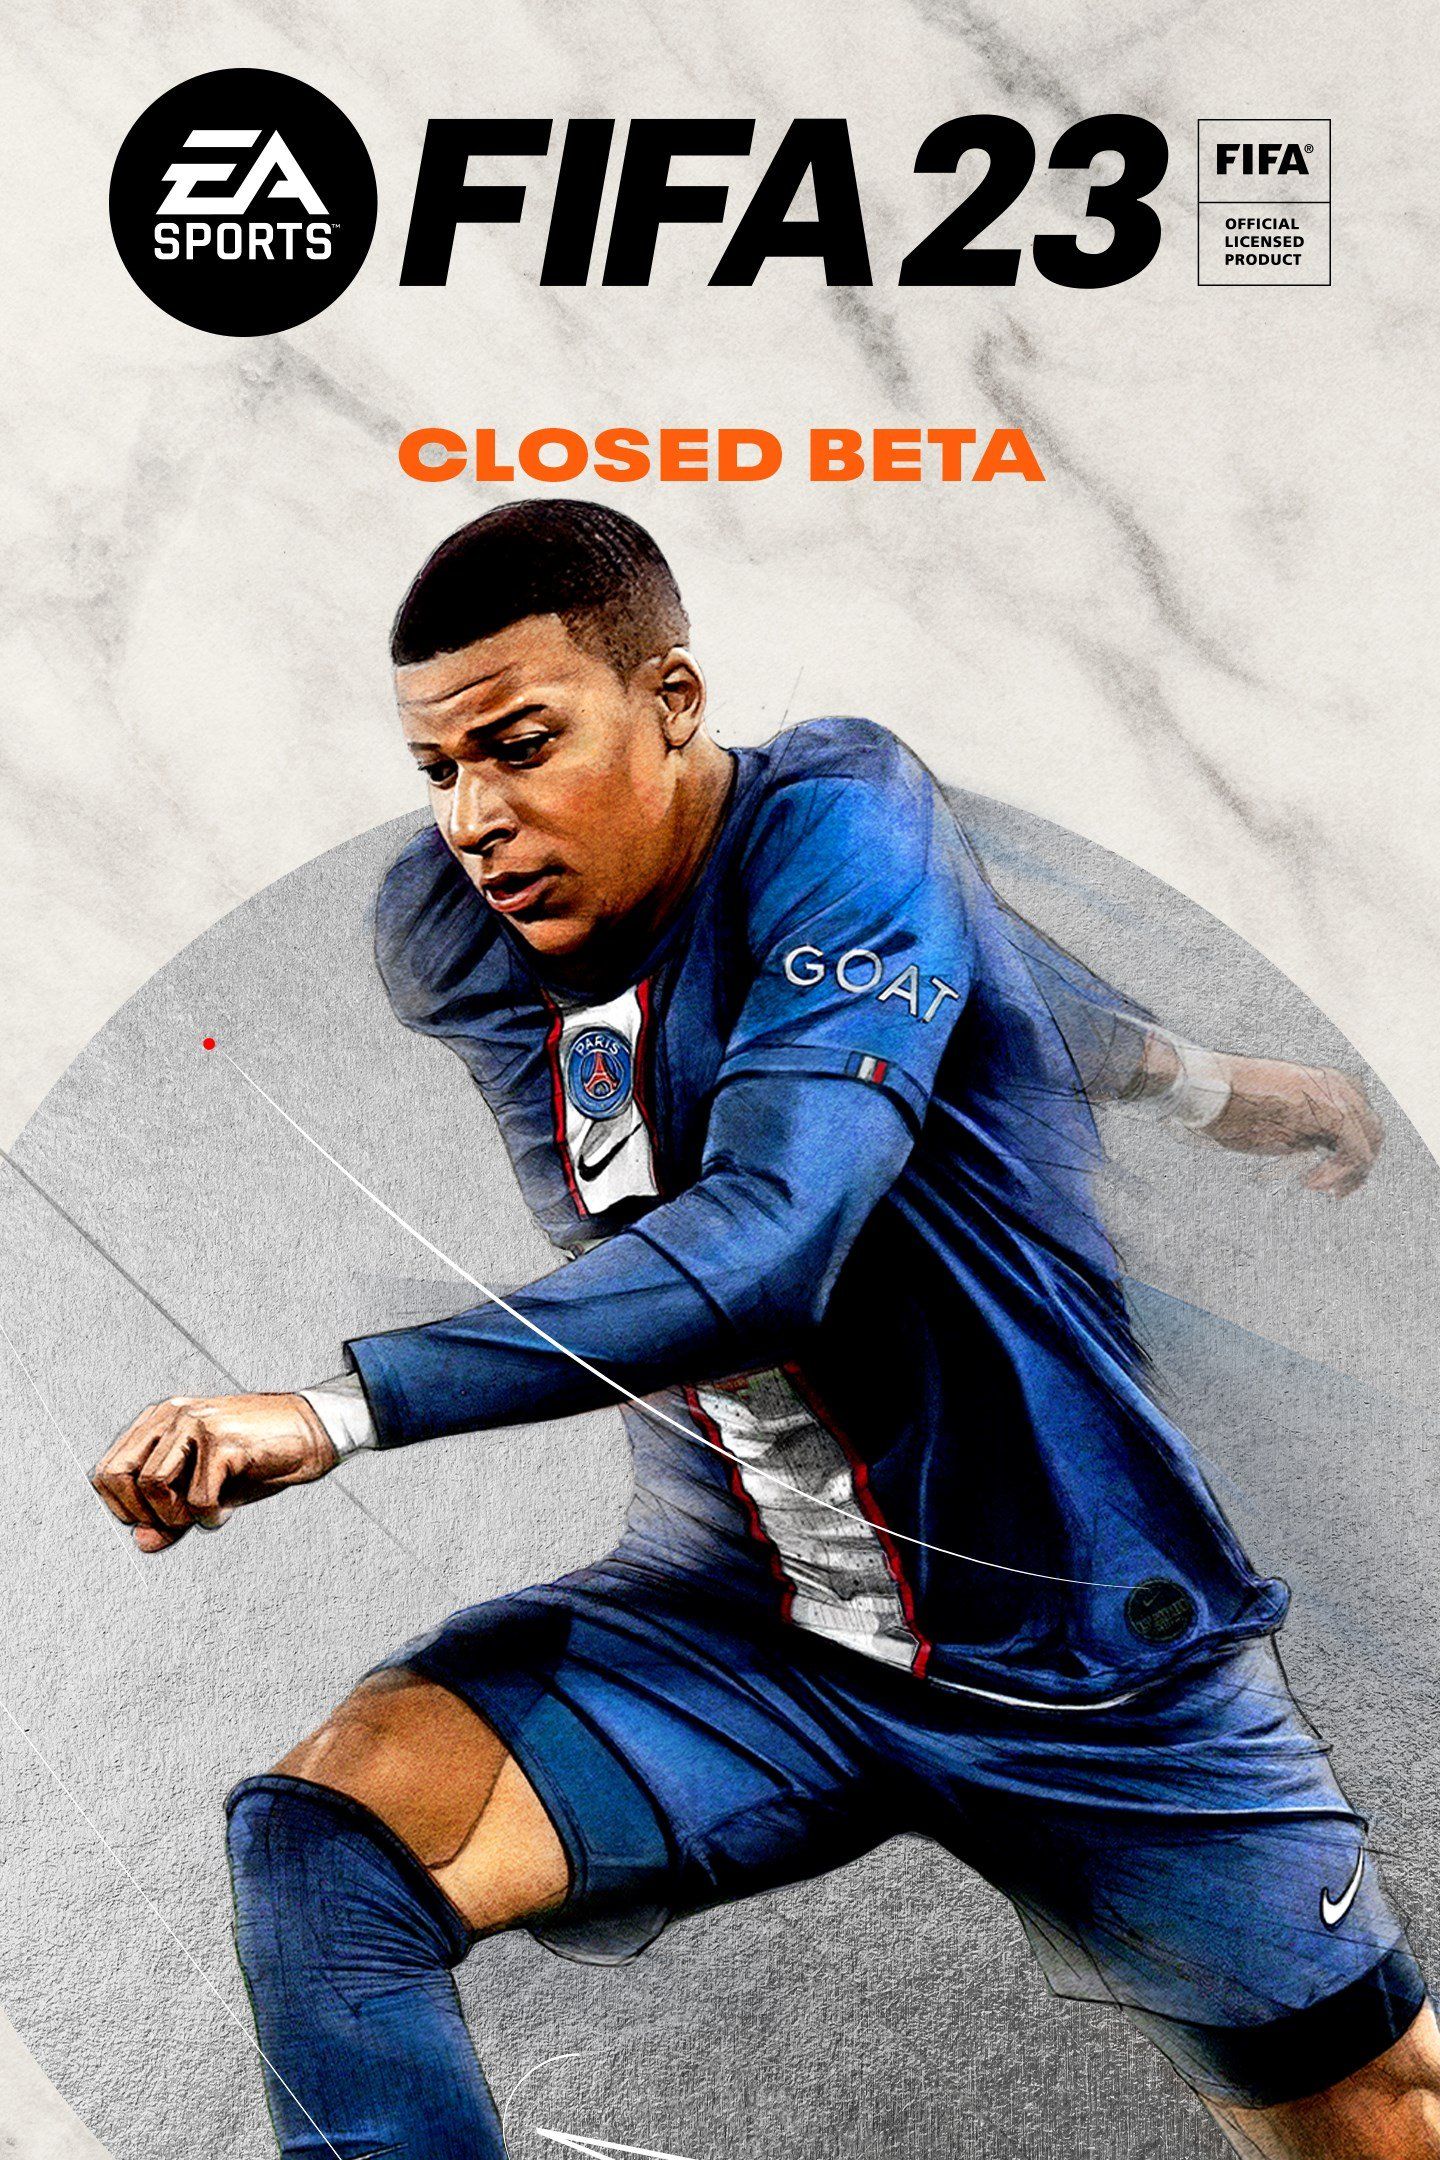 Обложка FIFA 23 с футболистом Килианом Мбаппе — версия для закрытого бета-тестирования